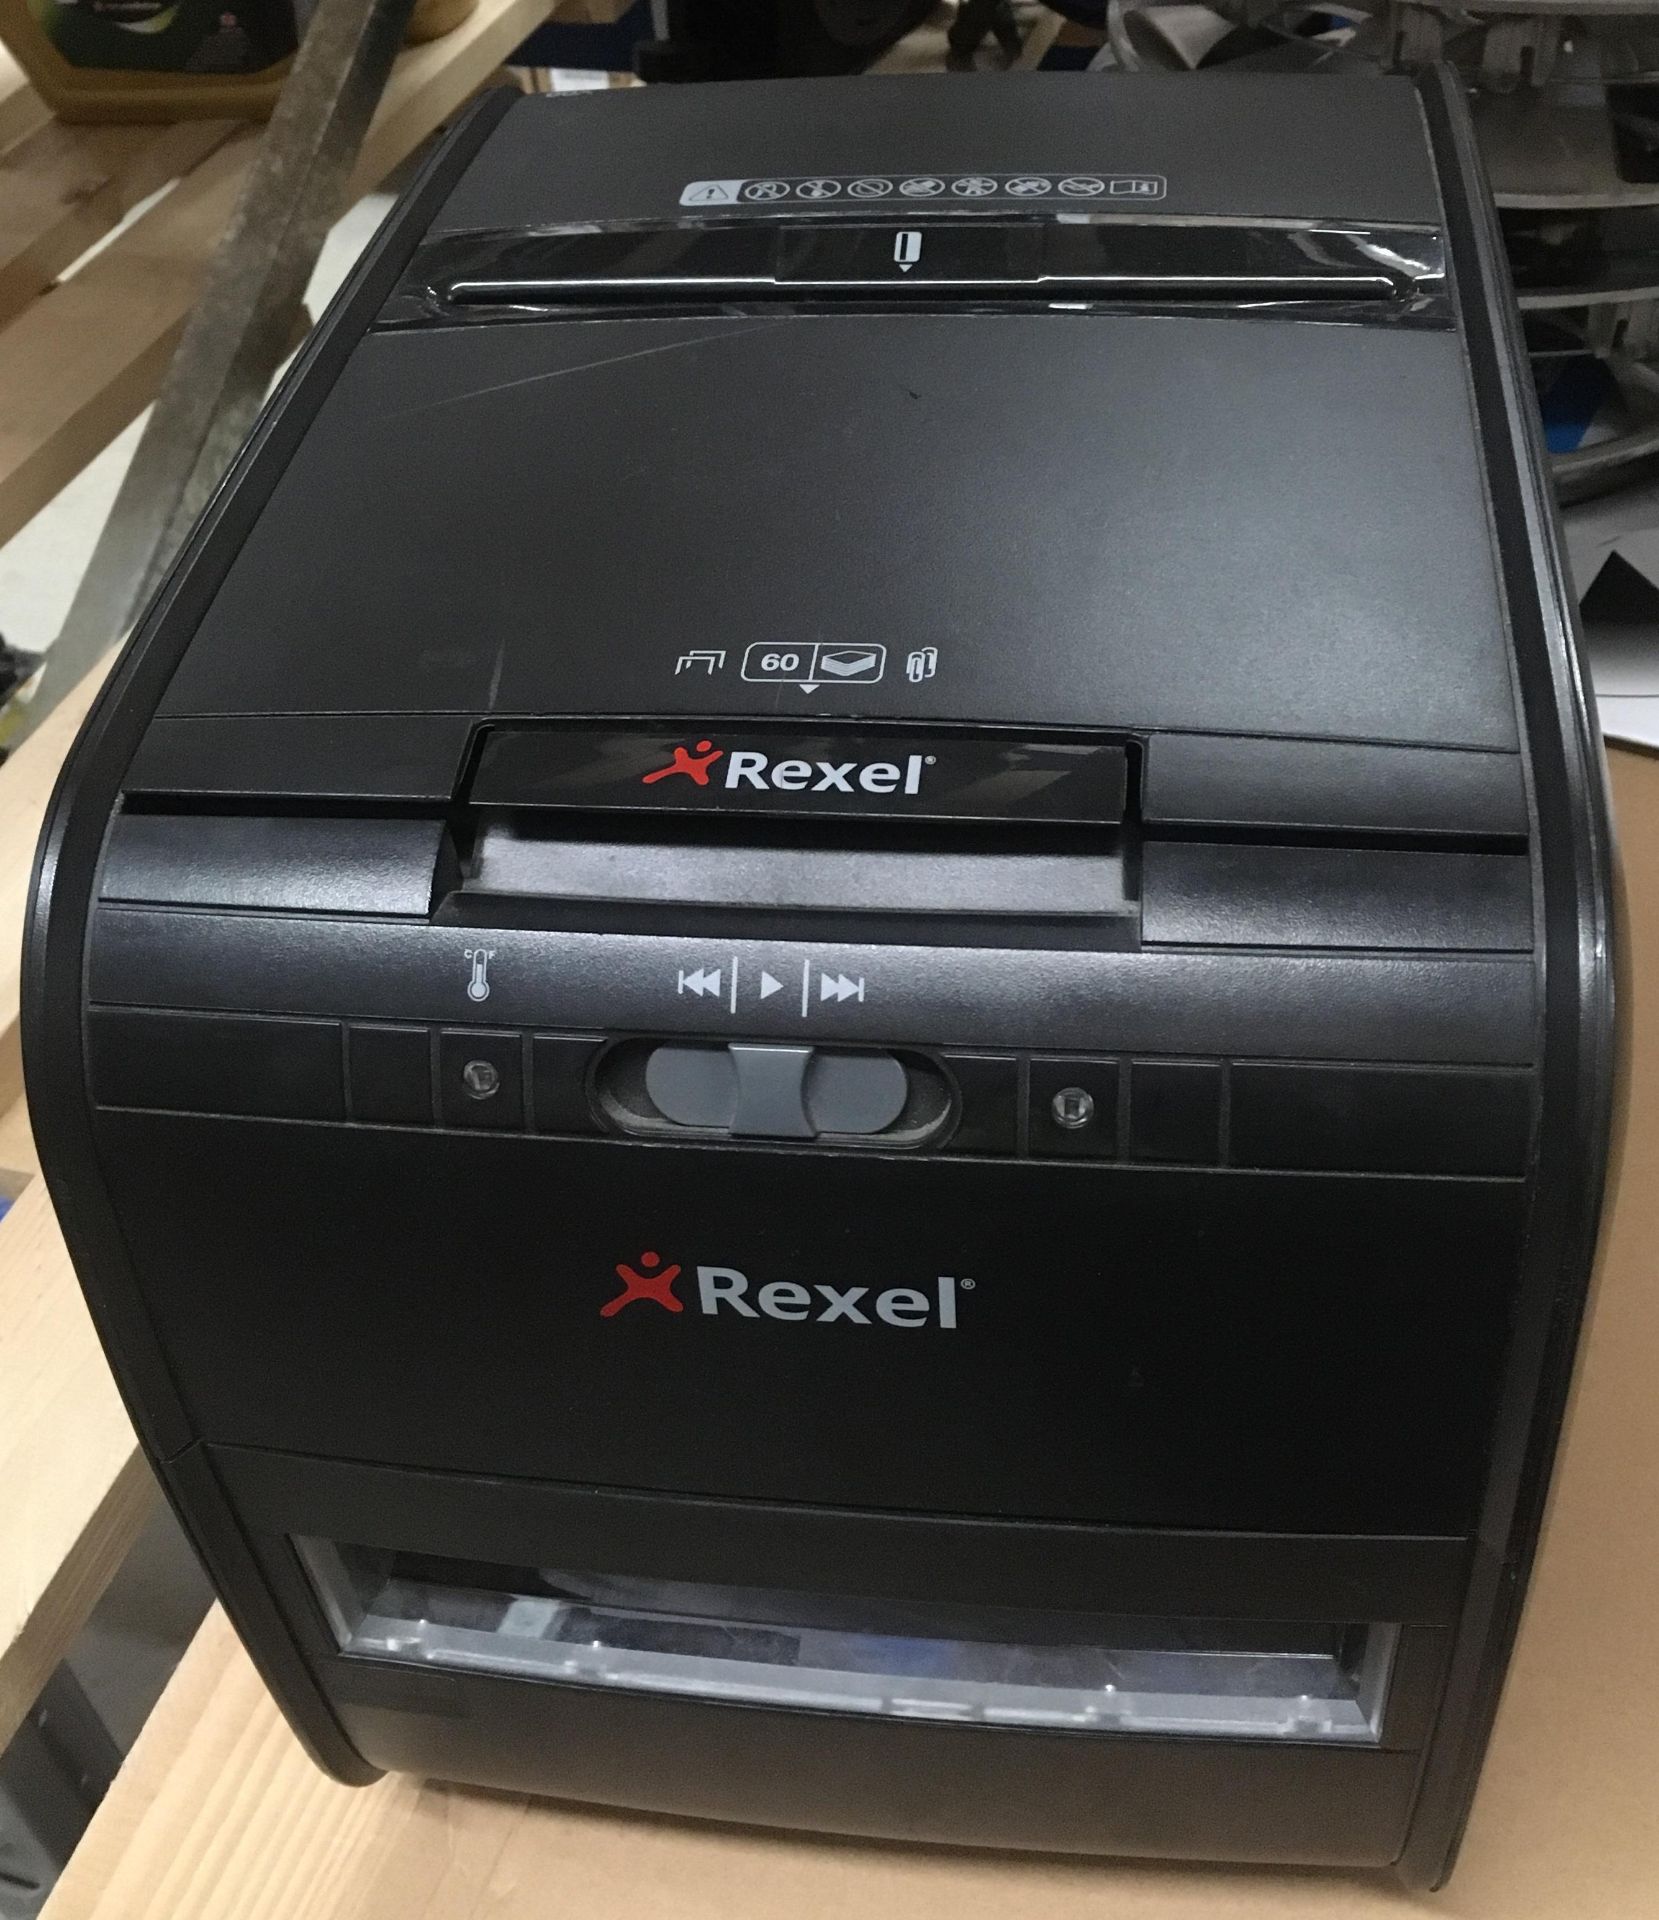 A Rexel 60 x auto feed shredder